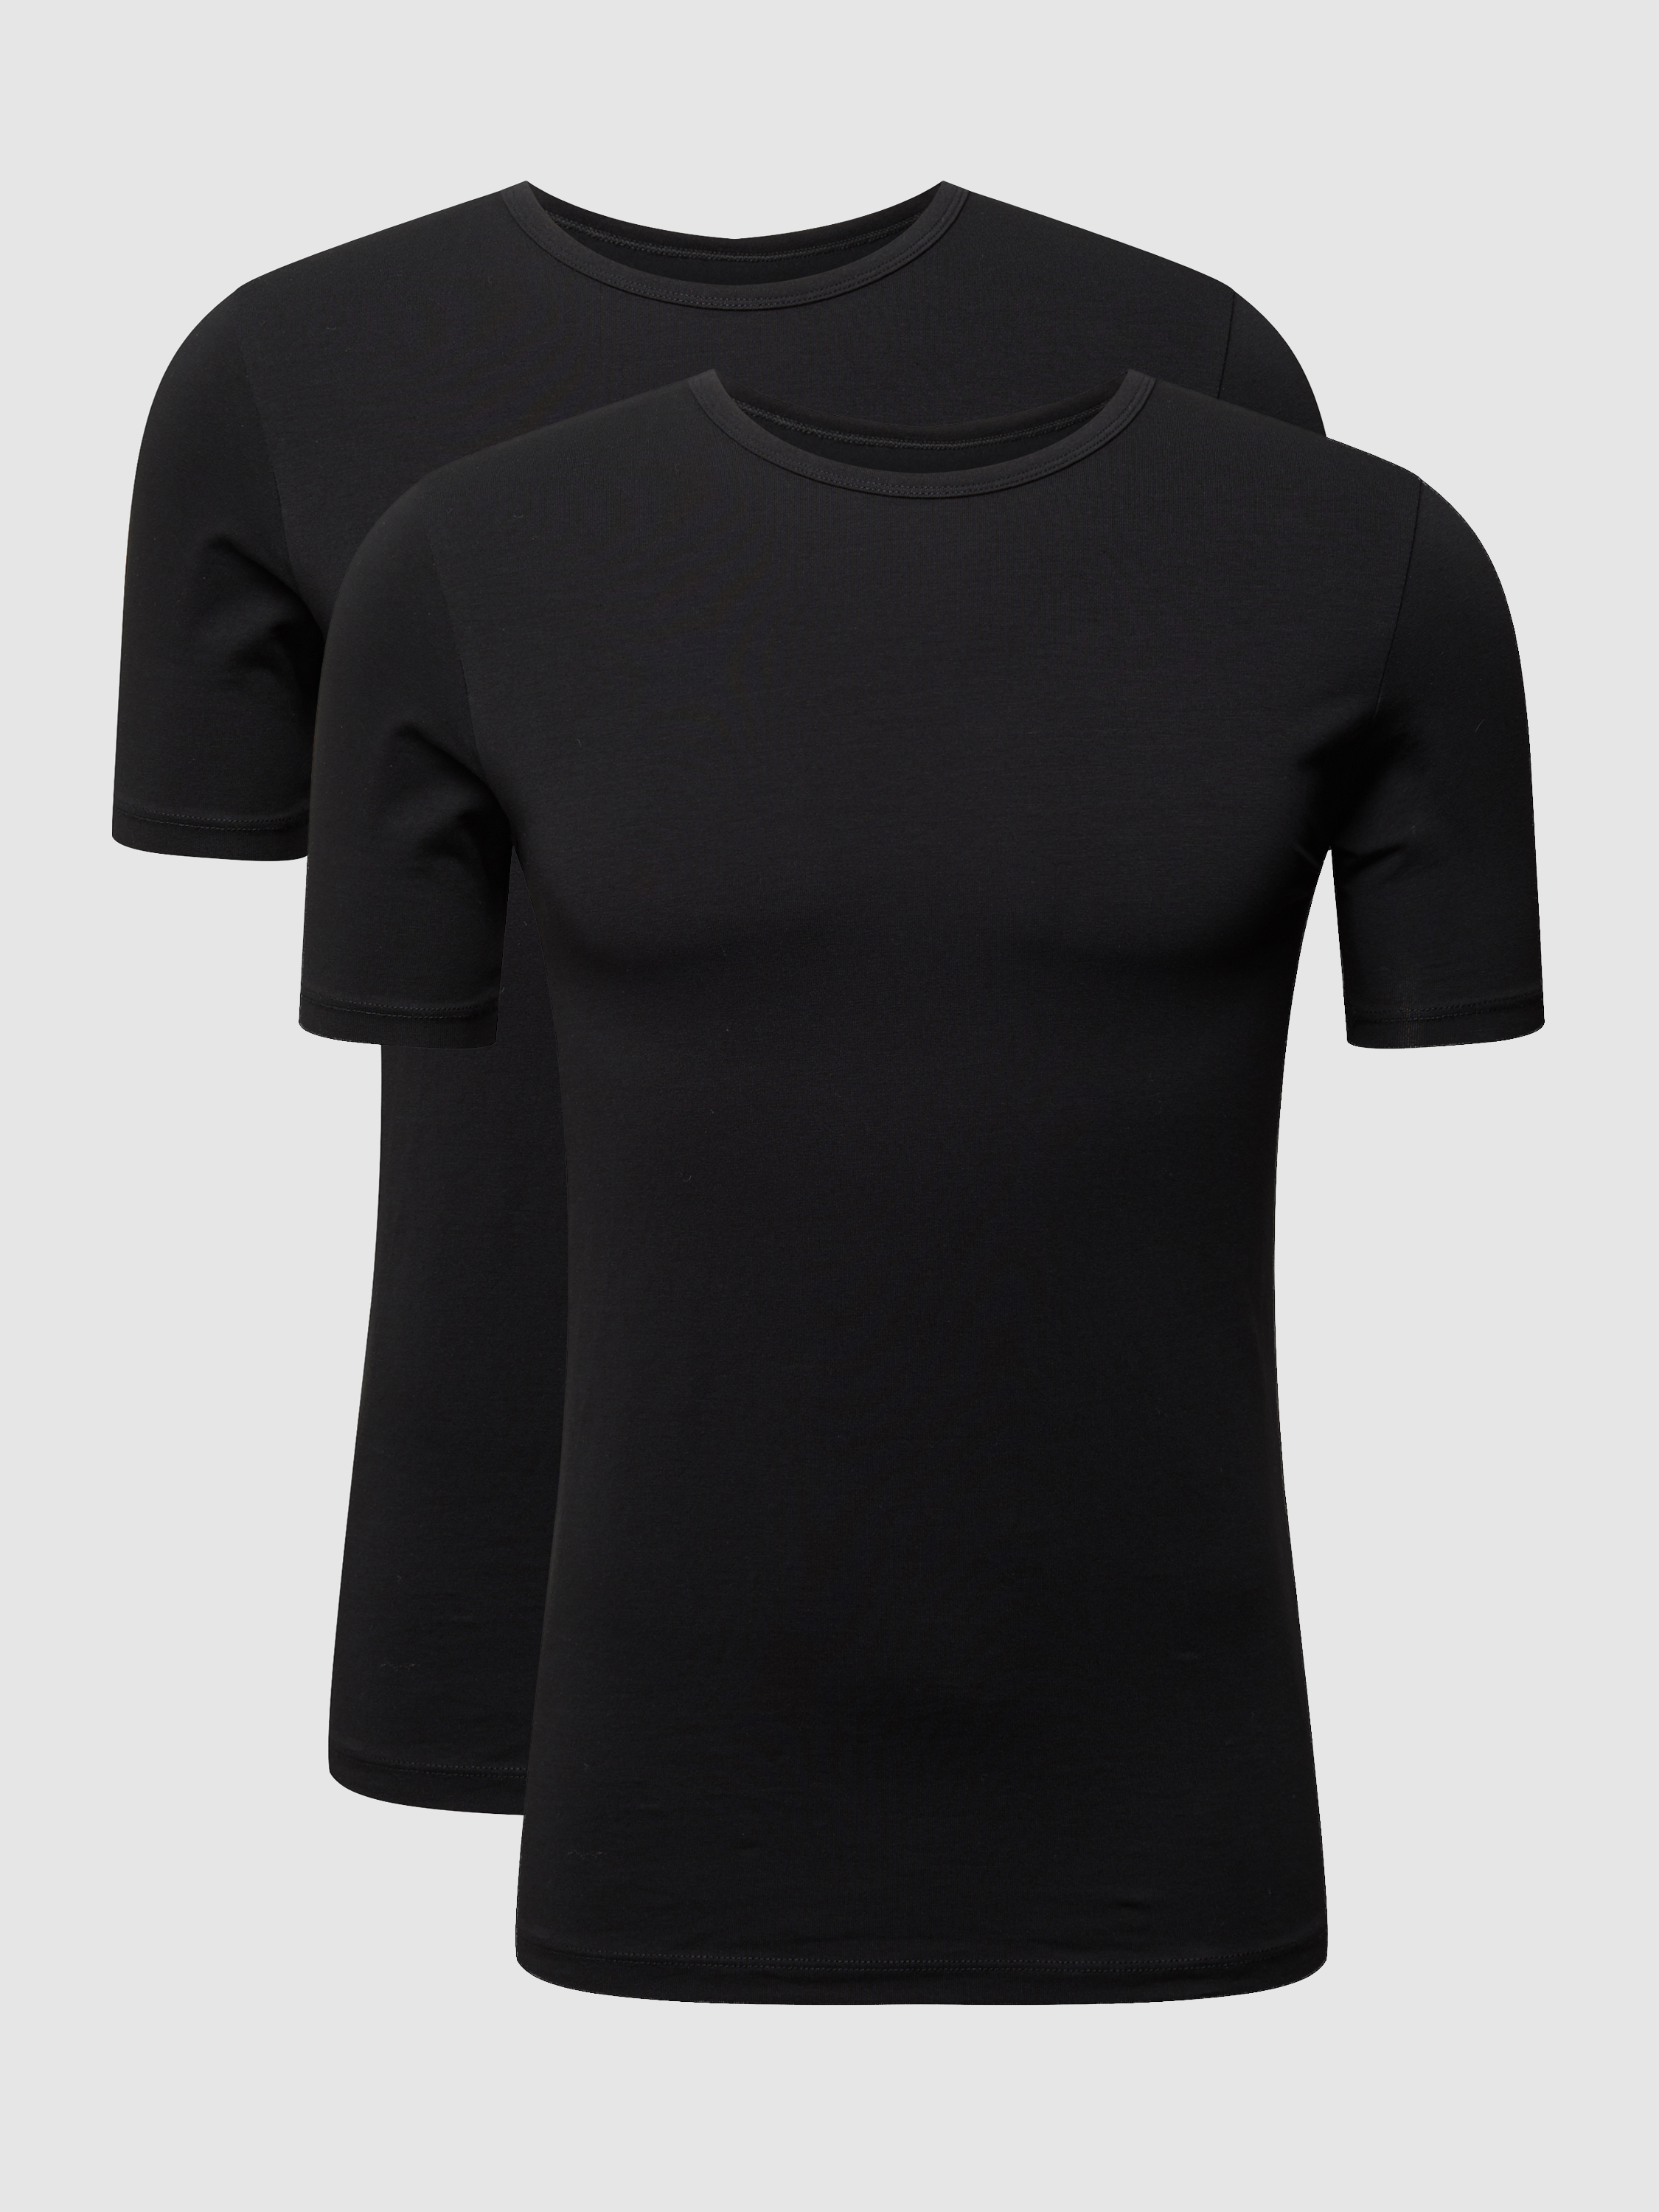 Комплект футболок мужских MCNEAL 958476 черных M (доставка из-за рубежа)